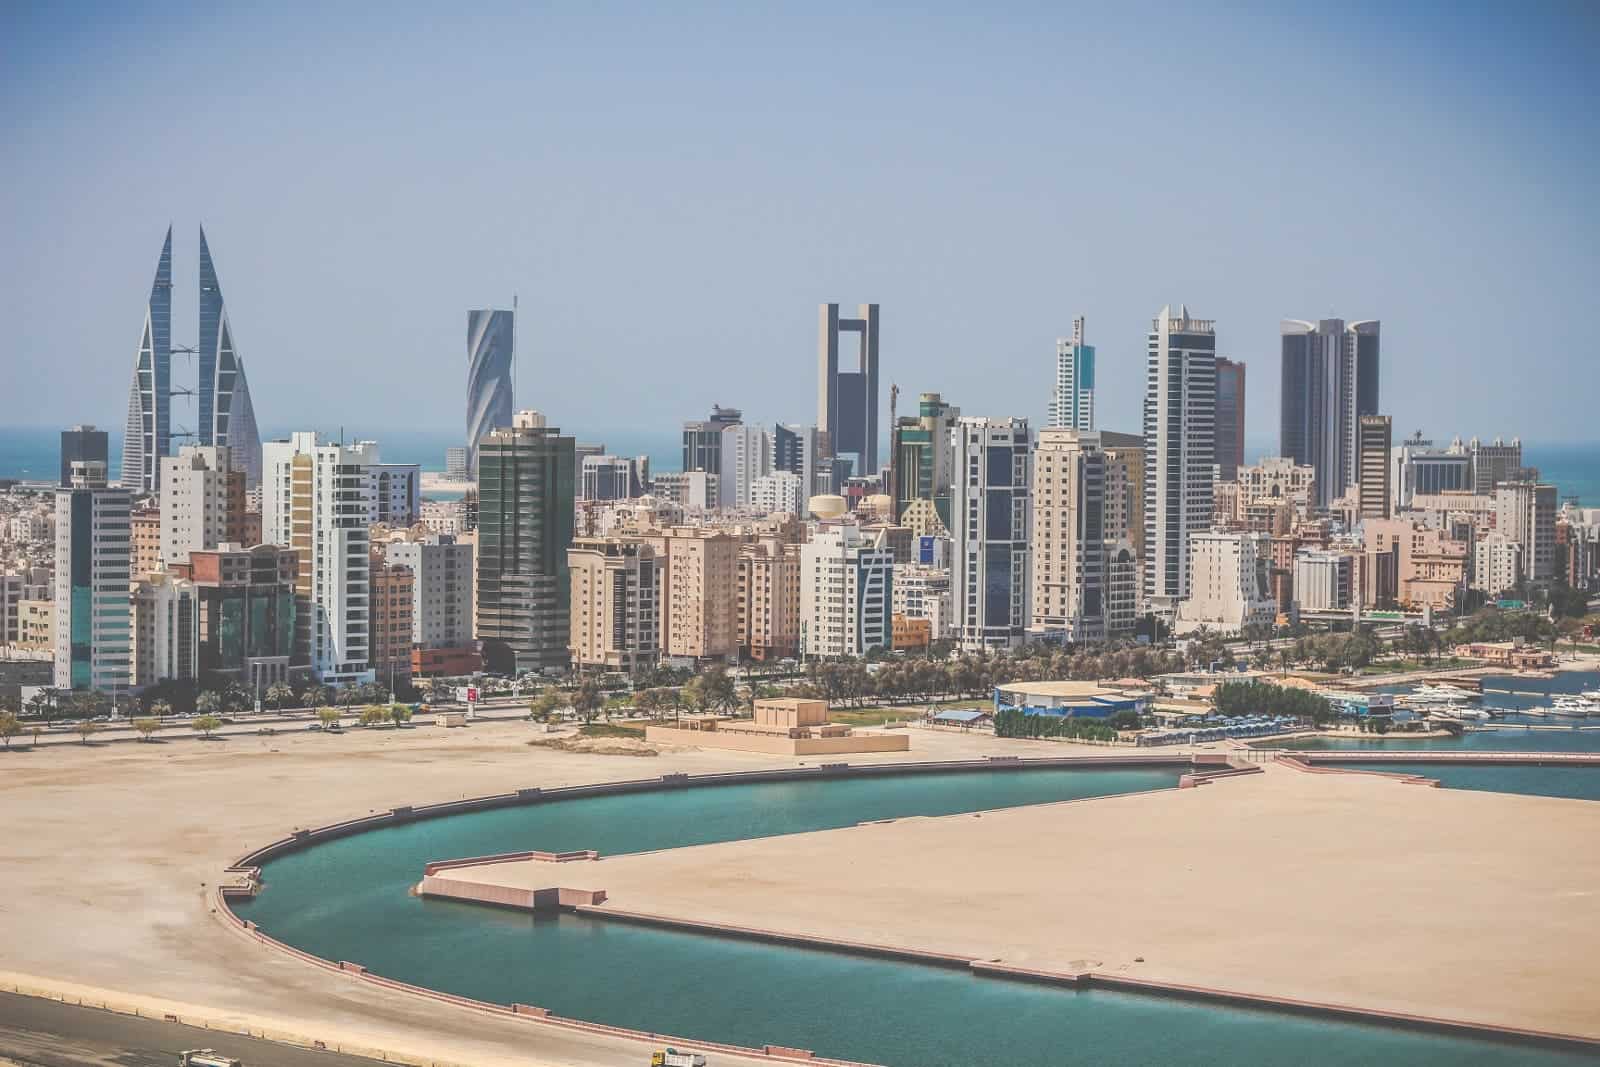 Bahrain's skyline. Image credits: Wadiia / Wikipedia.